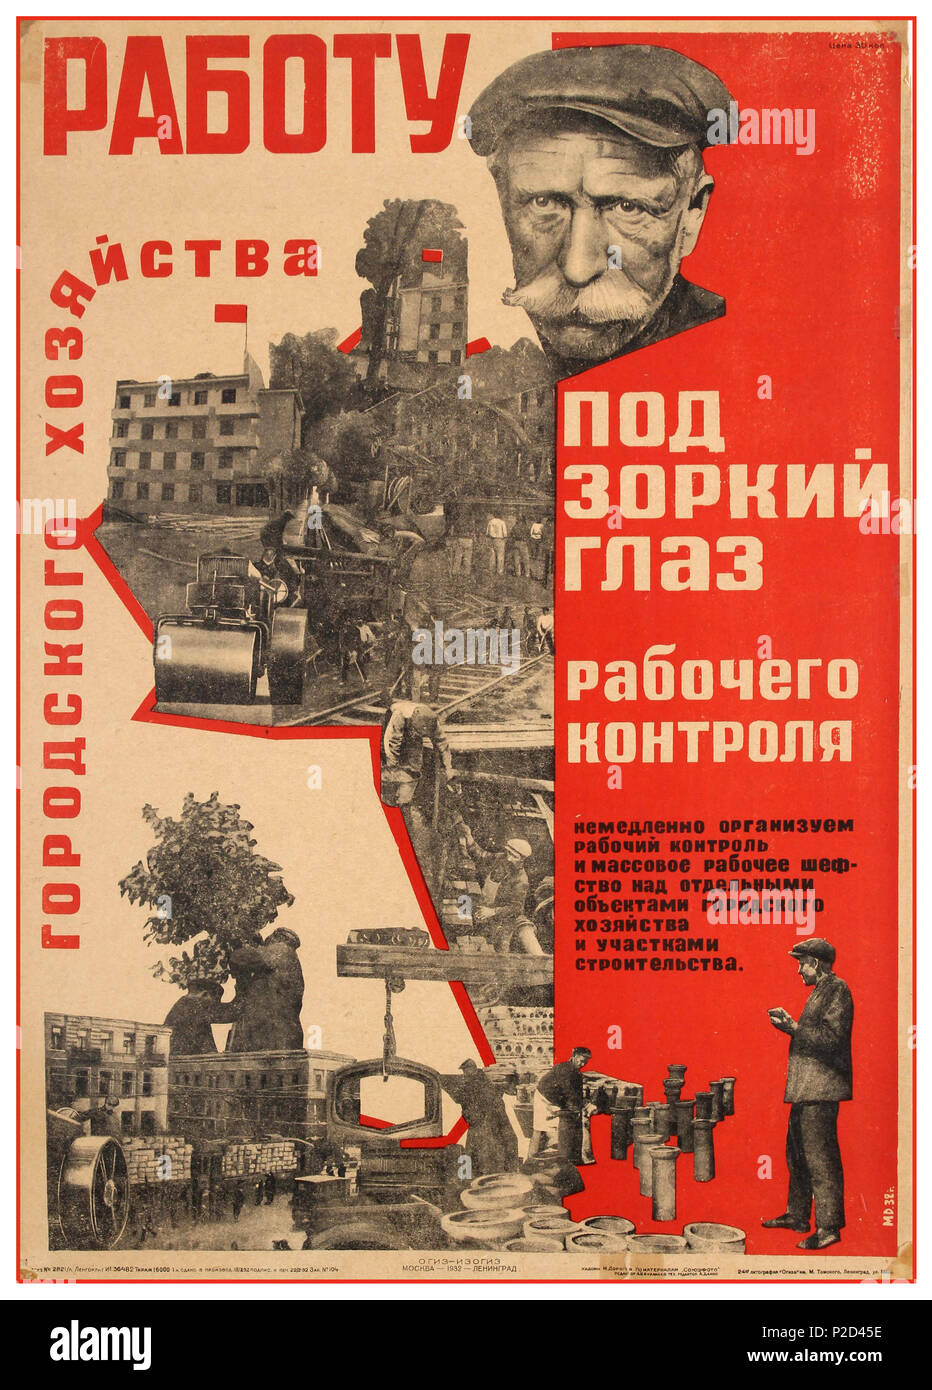 Jahrgang 1930 UDSSR sowjetischen Vintage Propaganda Poster Mit arbeiter Vermessung und Kontrolle von Arbeit, die sich in politische Revolution, Aufruhr und essen Hunger Lithographie Stockfoto